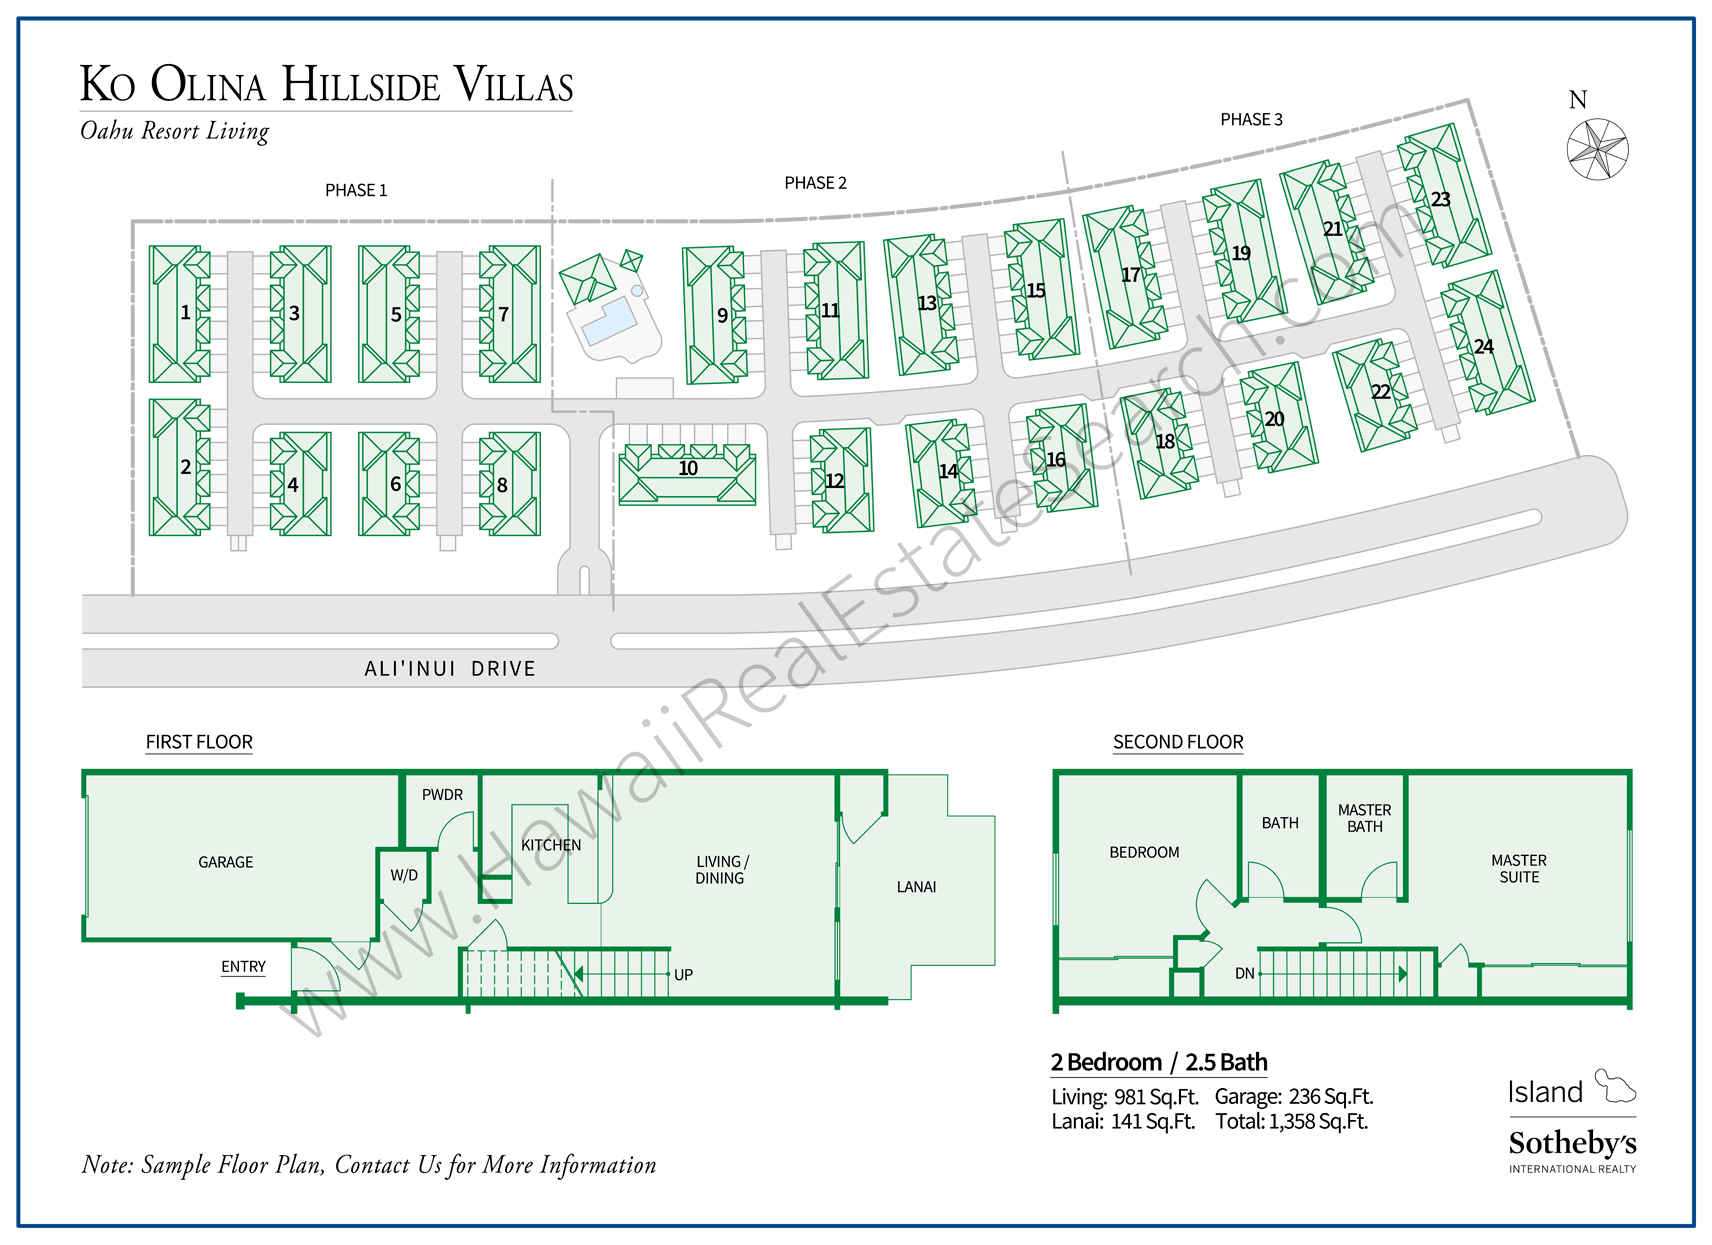 Ko Olina Hillside Villas Property Map